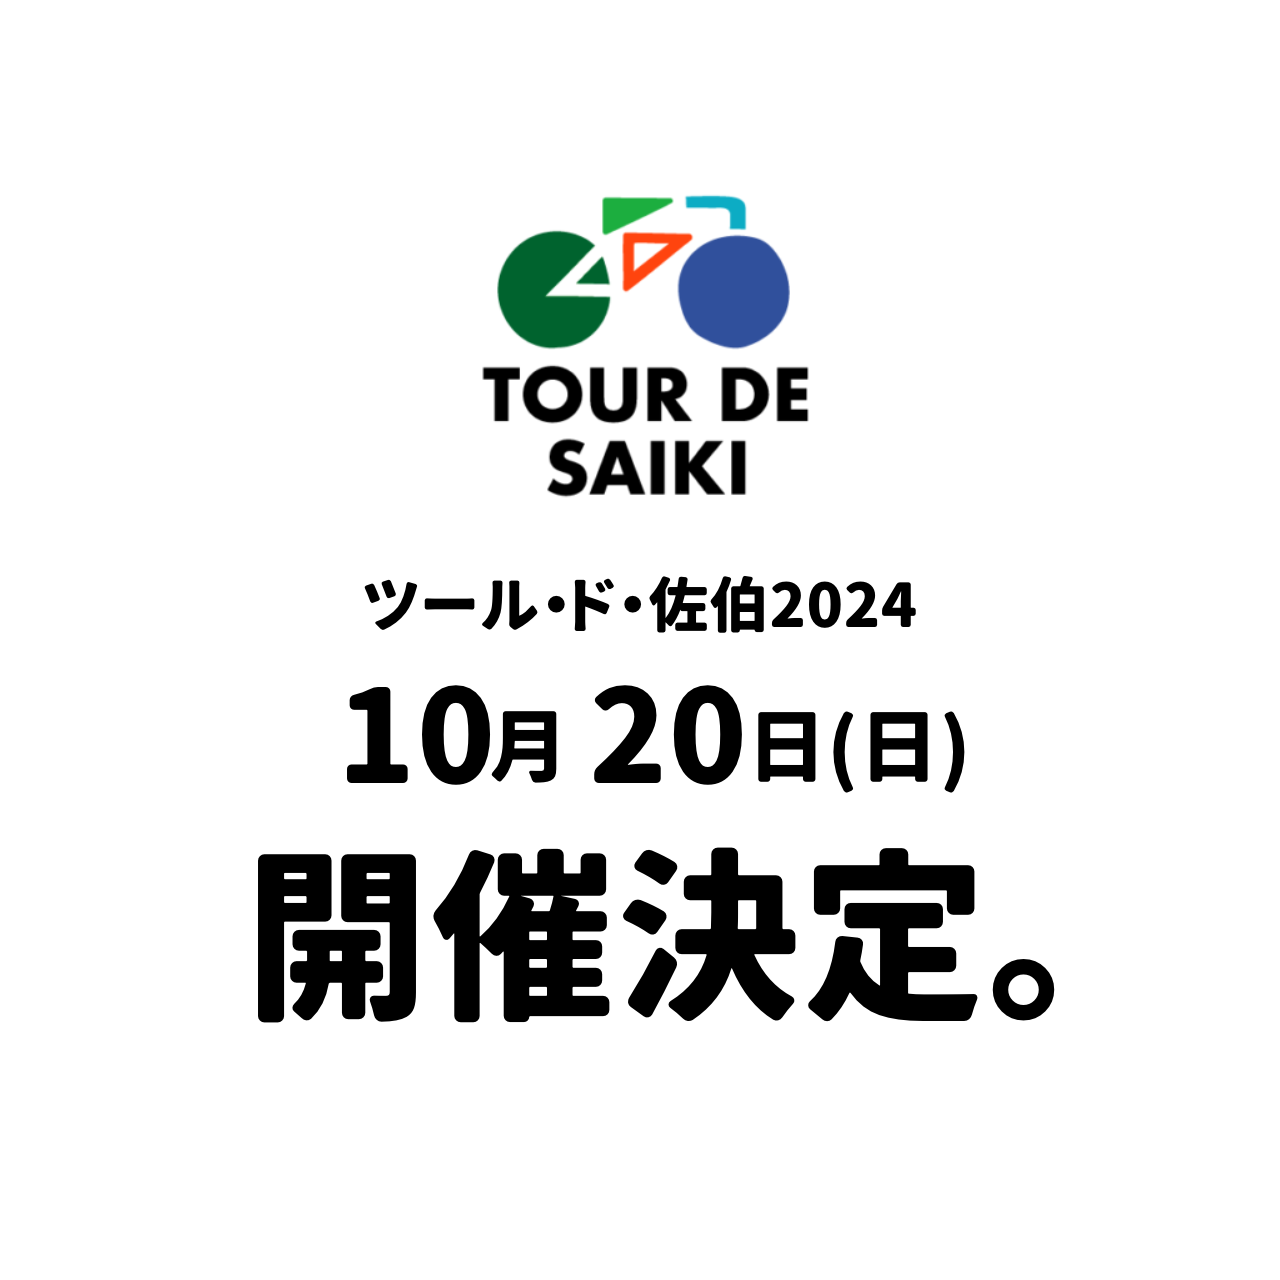 佐伯市で「TOUR DE SAIKI 2024」が開催されます！